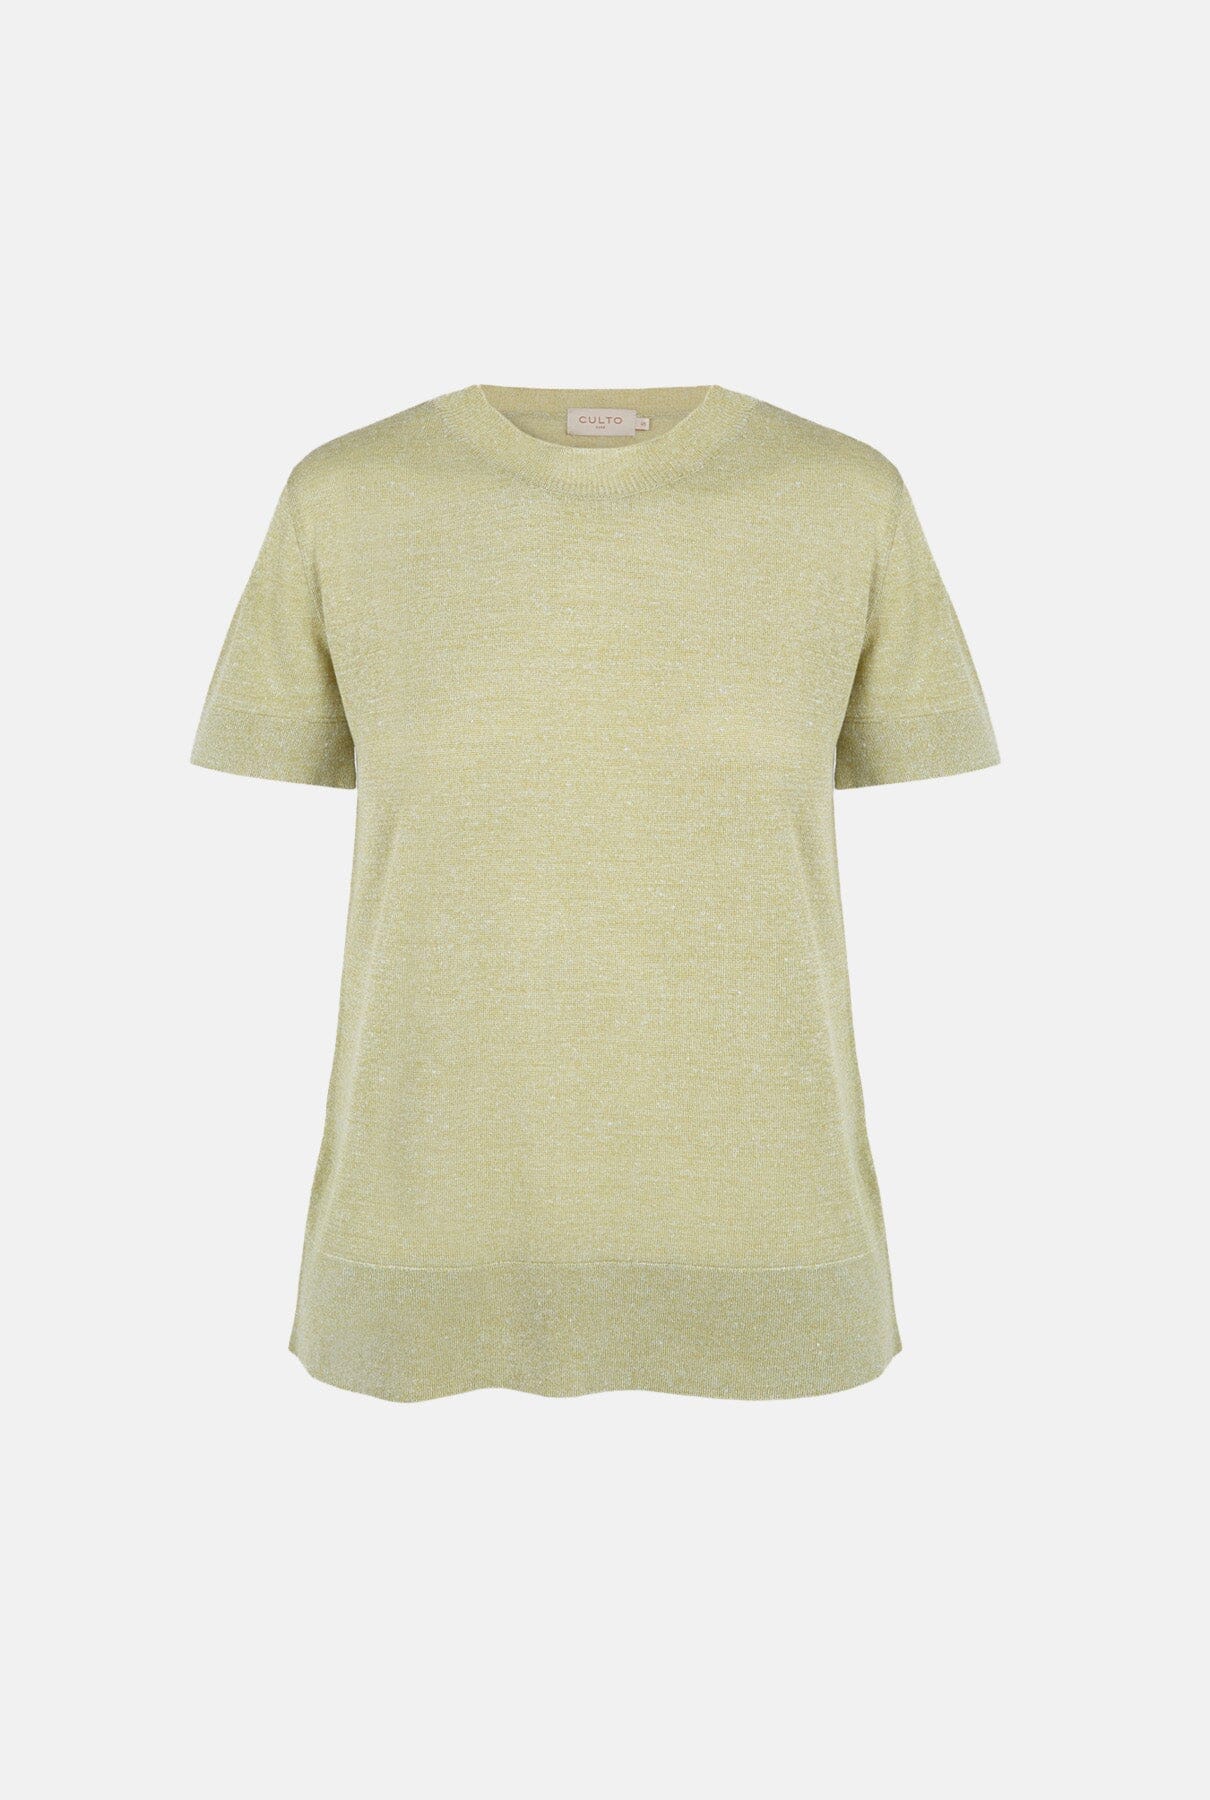 Camiseta de punto lino y seda lima T-Shirts & tops Culto 1105 